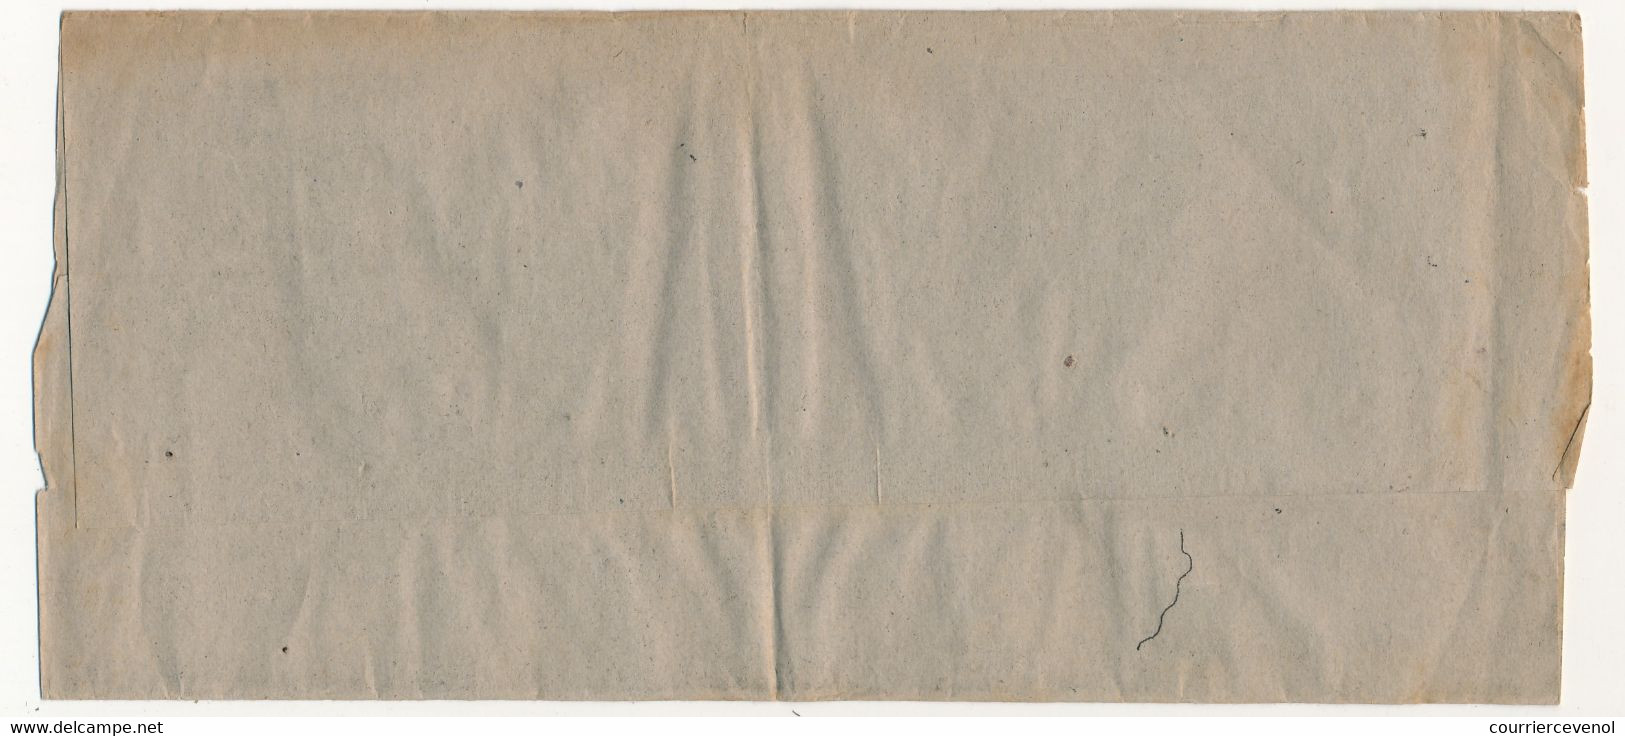 FRANCE - 10c Blanc Préoblitéré Sur Document Bande De Journal - Publicité S.P.C.I. Paris - 1893-1947